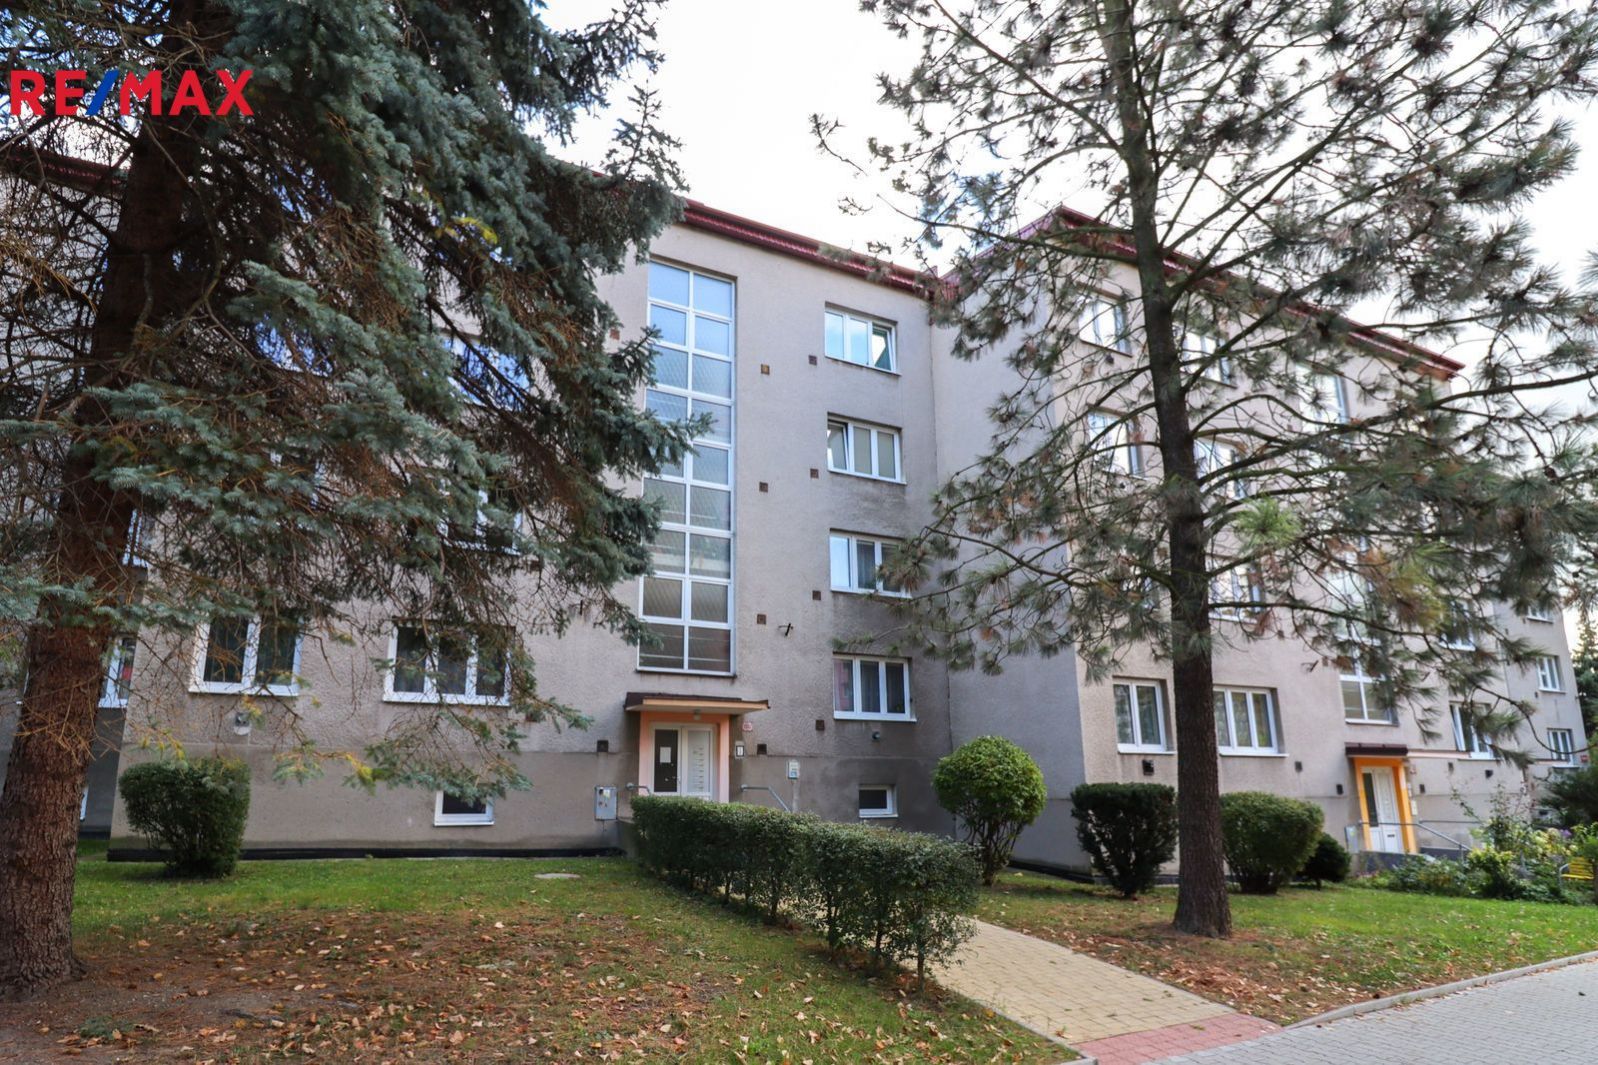 Prodej bytu 3+1 v osobním vlastnictví v centru Čáslavi o velikosti 68m., obrázek č. 1